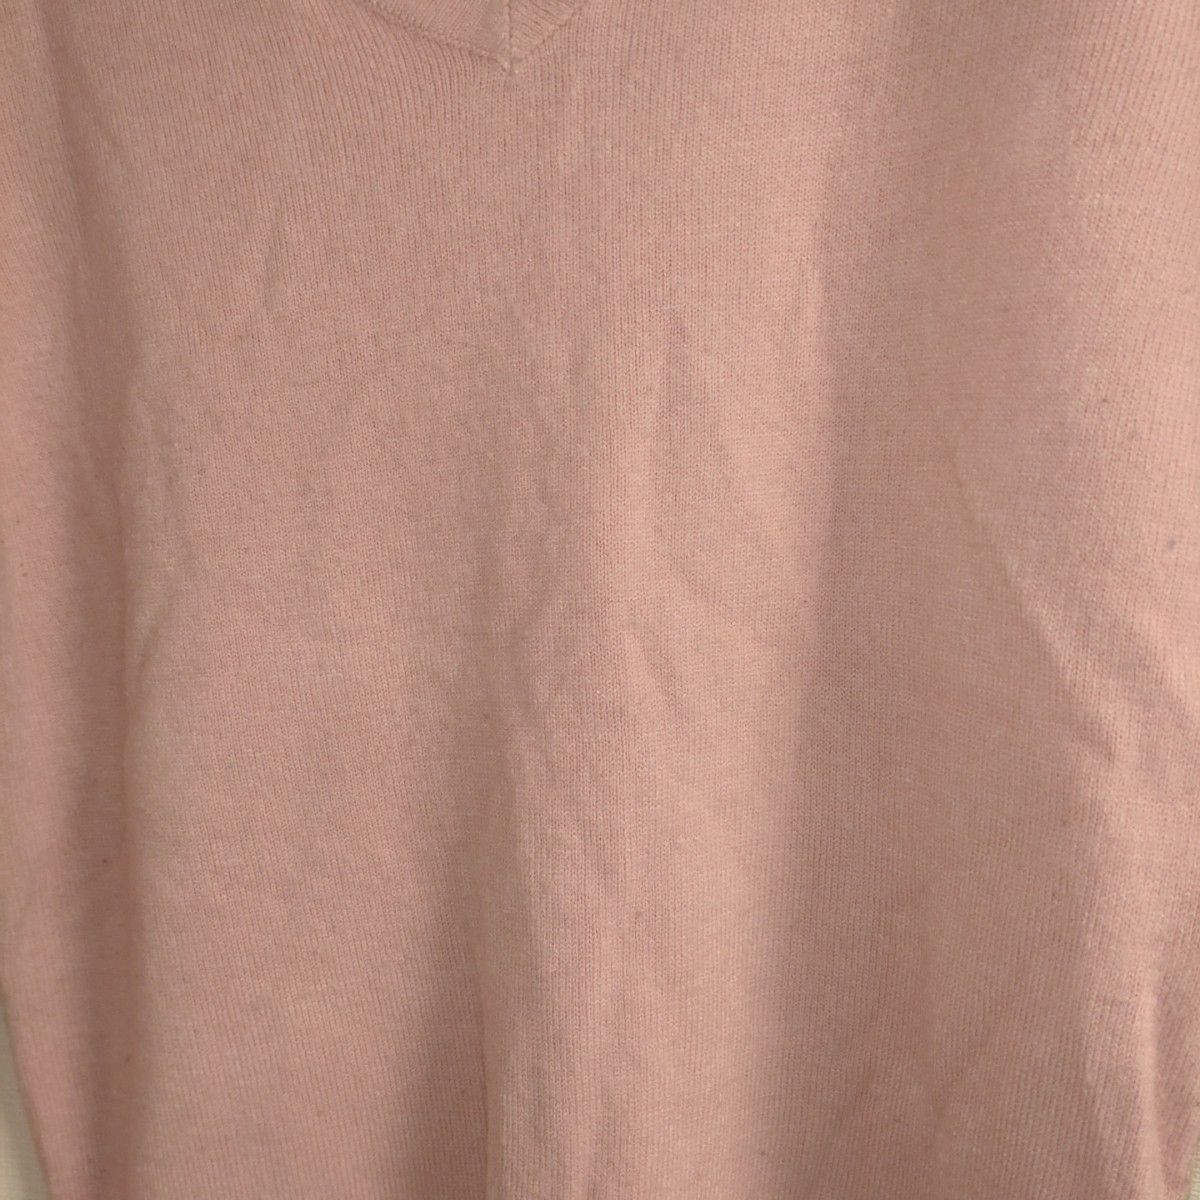 神戸レタス レディース おうちで洗えるニット ピンクベージュ Mサイズ  長袖 トップス セーター